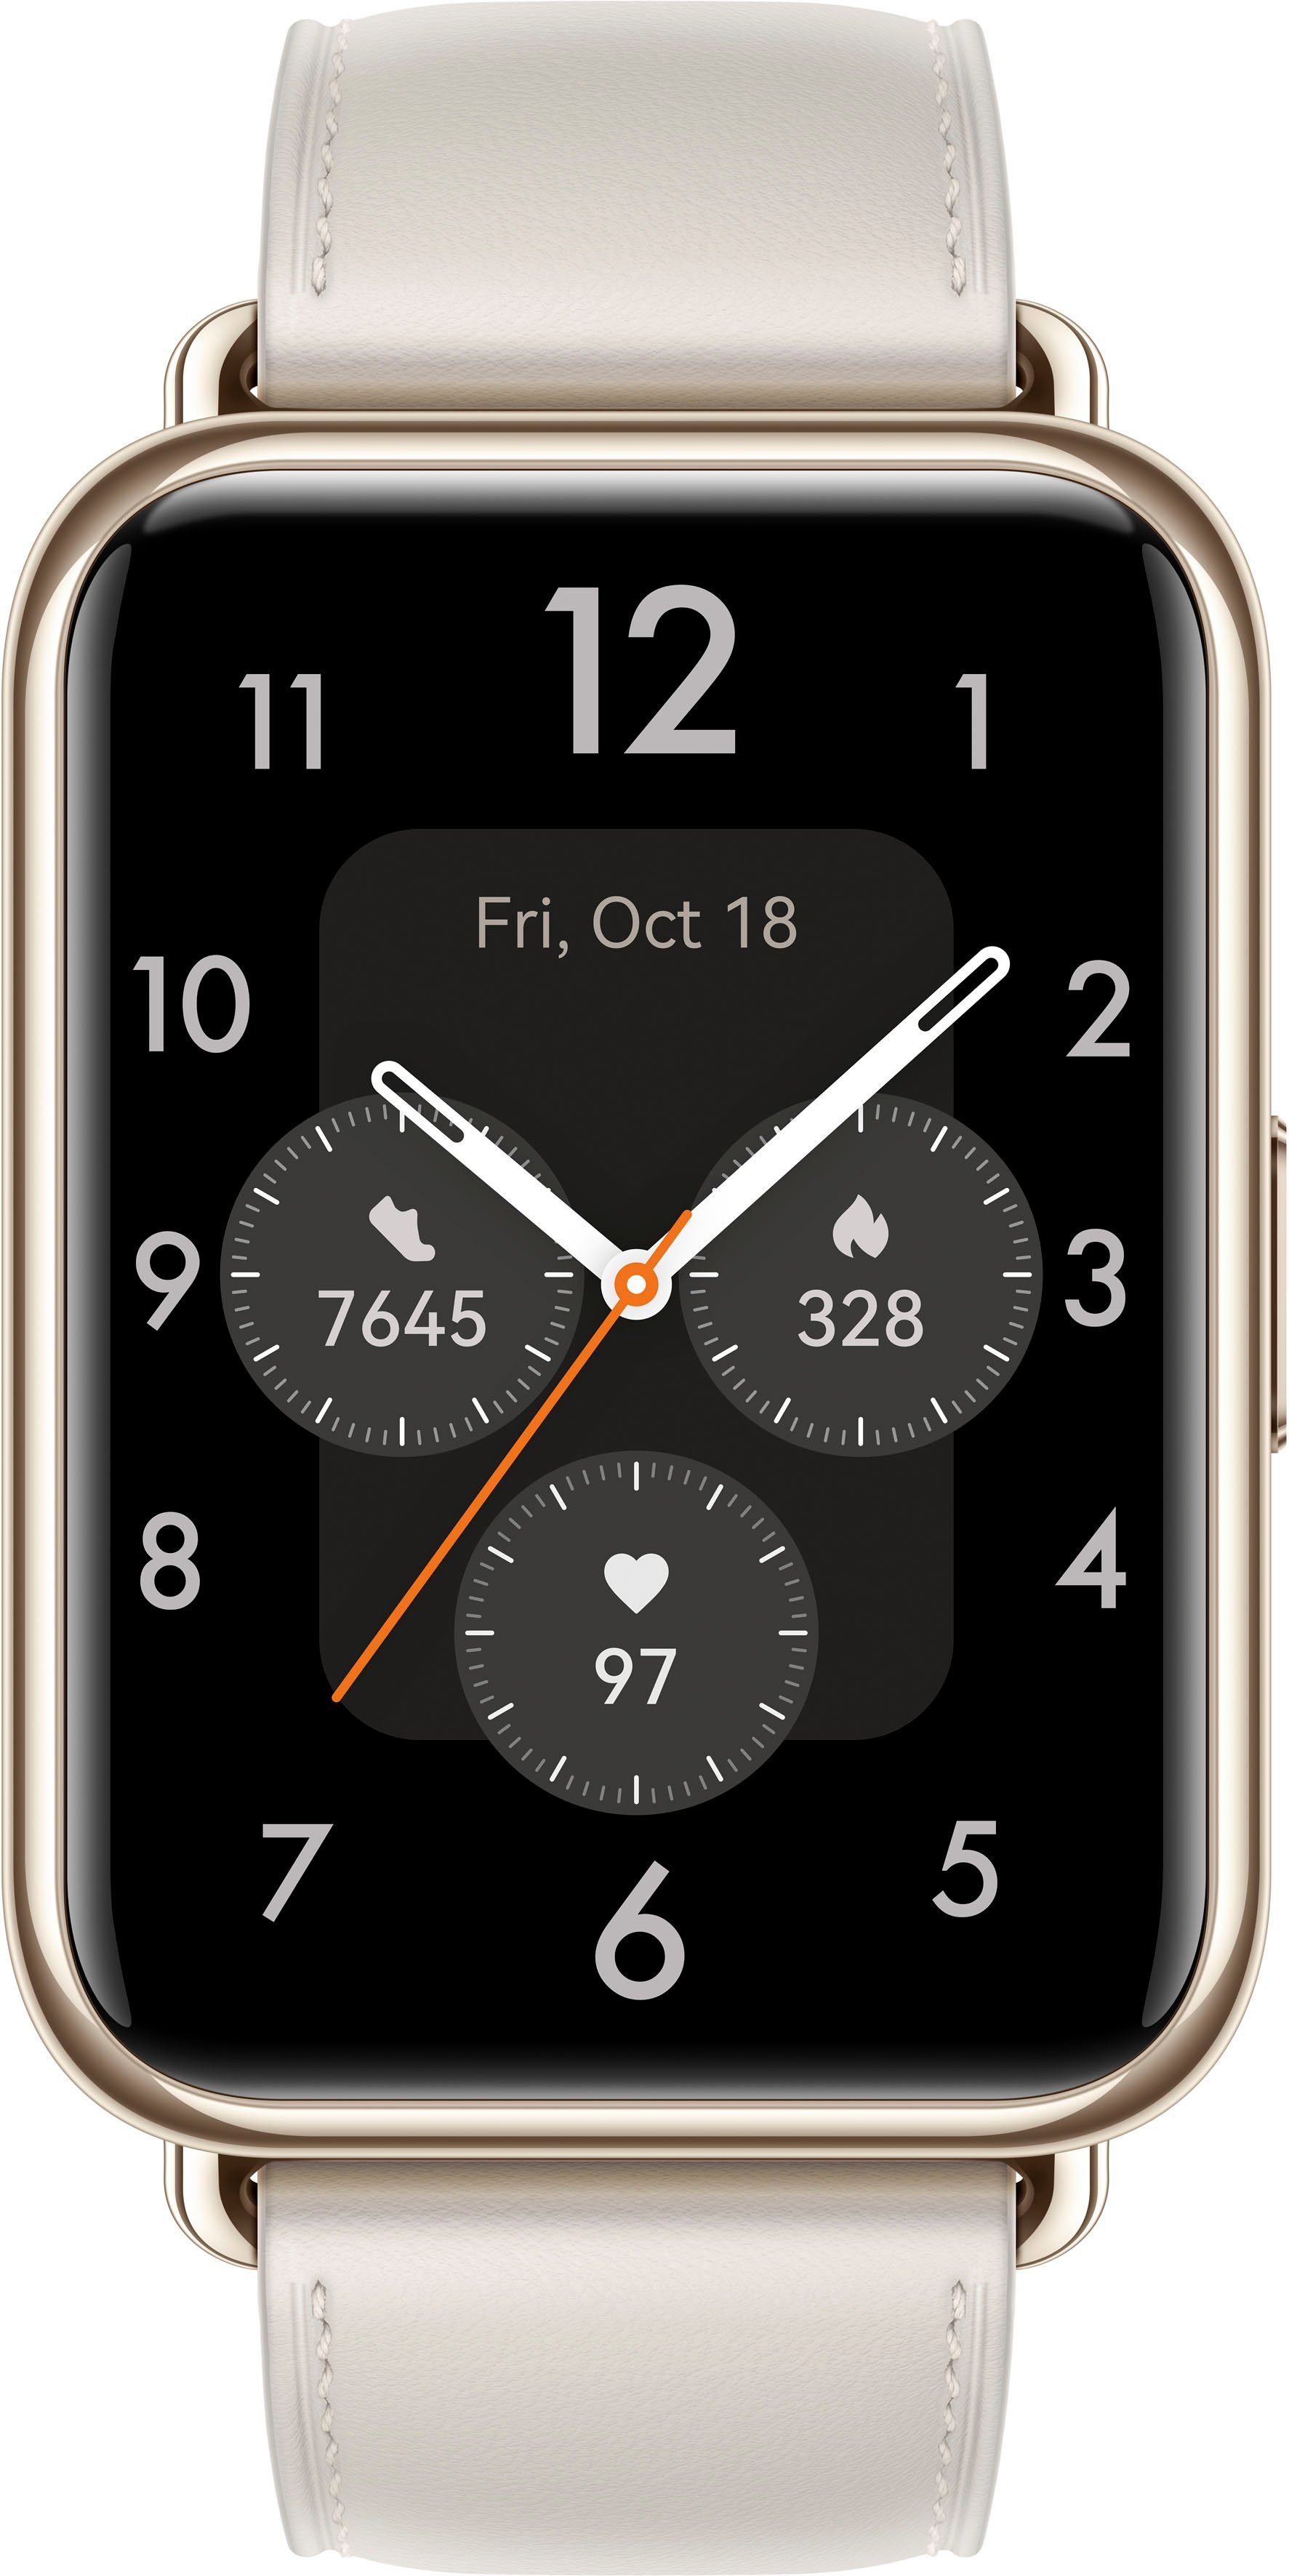 Huawei Watch 2 Fit Jahre 3 weiß Herstellergarantie Smartwatch